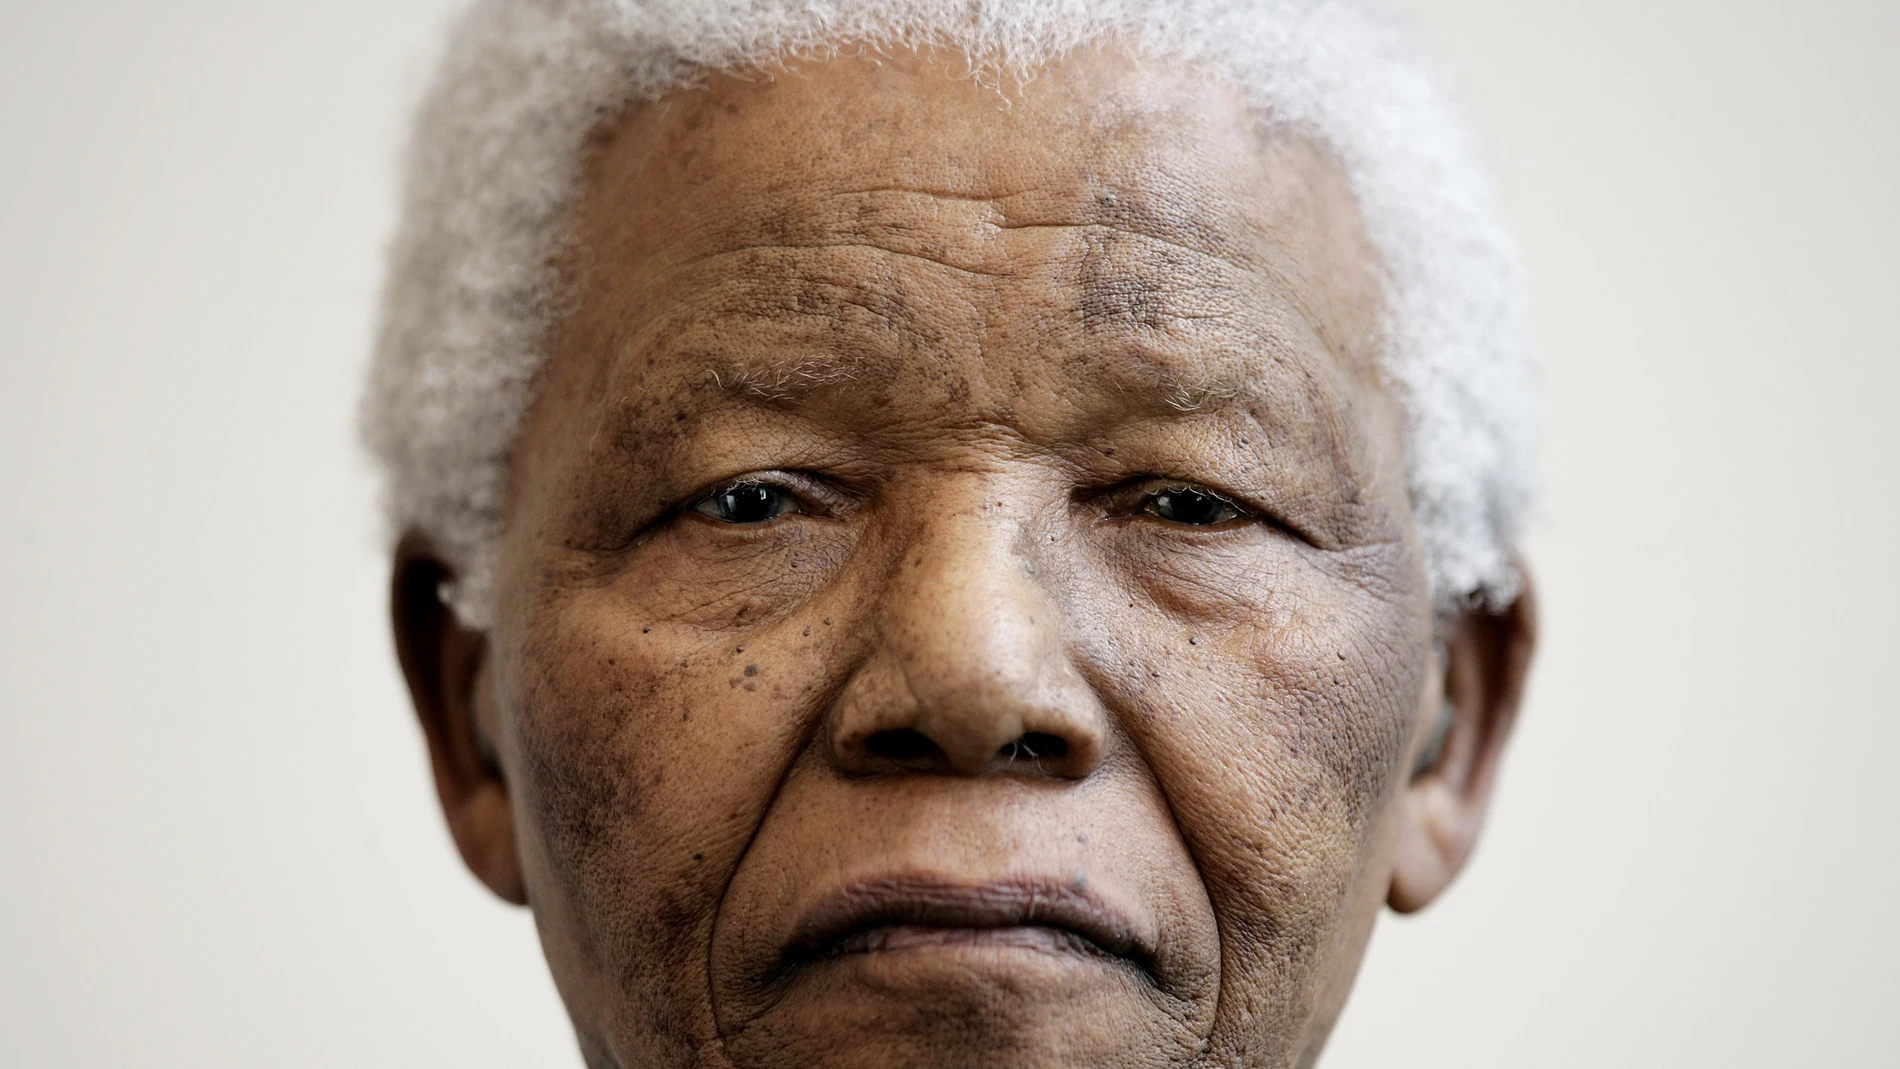 Nelson Mandela, ex presidente de Sudáfrica